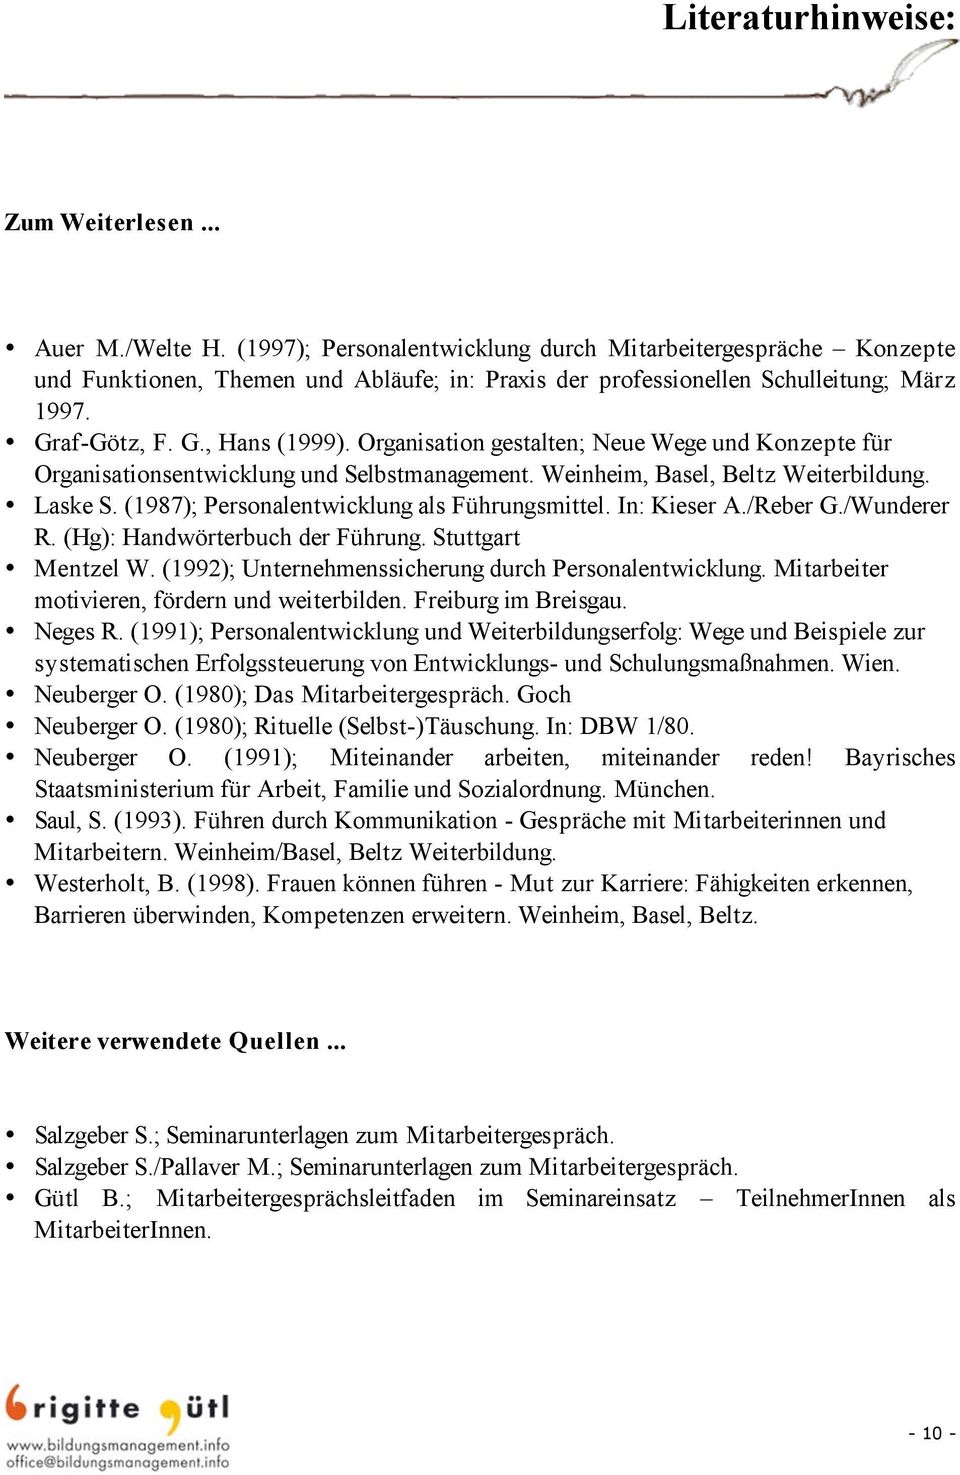 Organisation gestalten; Neue Wege und Konzepte für Organisationsentwicklung und Selbstmanagement. Weinheim, Basel, Beltz Weiterbildung. Laske S. (1987); Personalentwicklung als Führungsmittel.